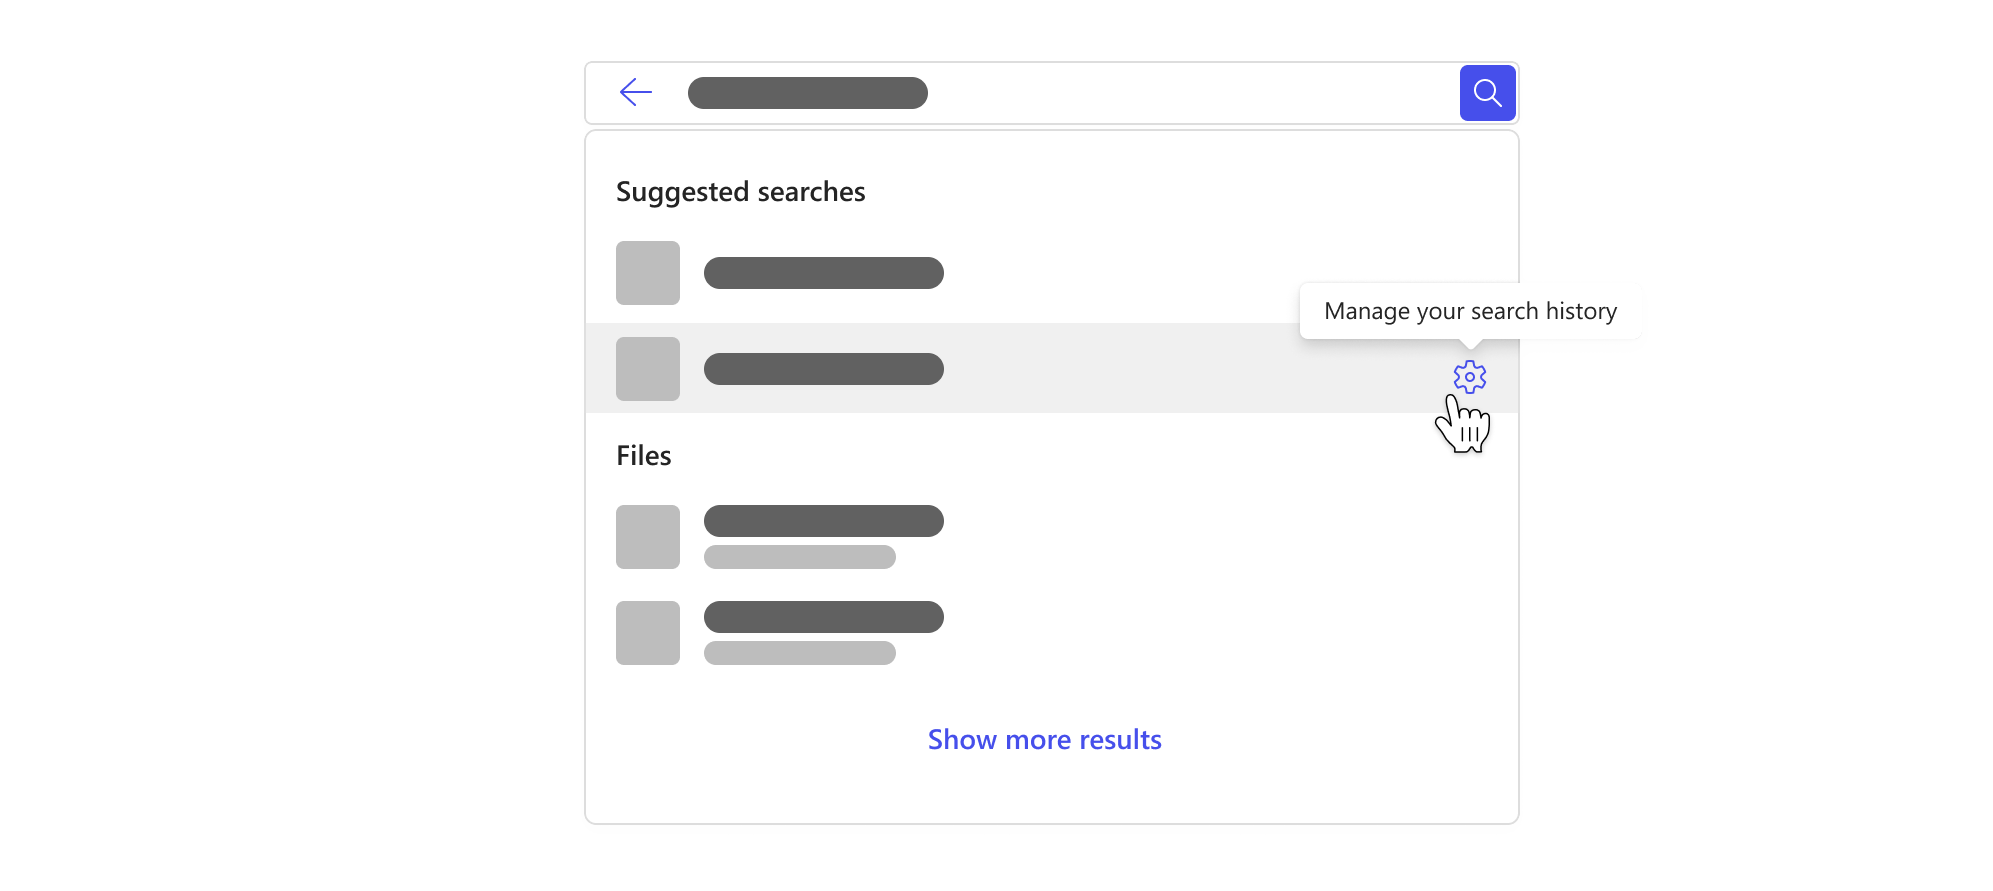 Kotak pencarian dengan menu menurun yang menyoroti saran pencarian berdasarkan riwayat pencarian dan tombol untuk mengelola riwayat pencarian Anda.